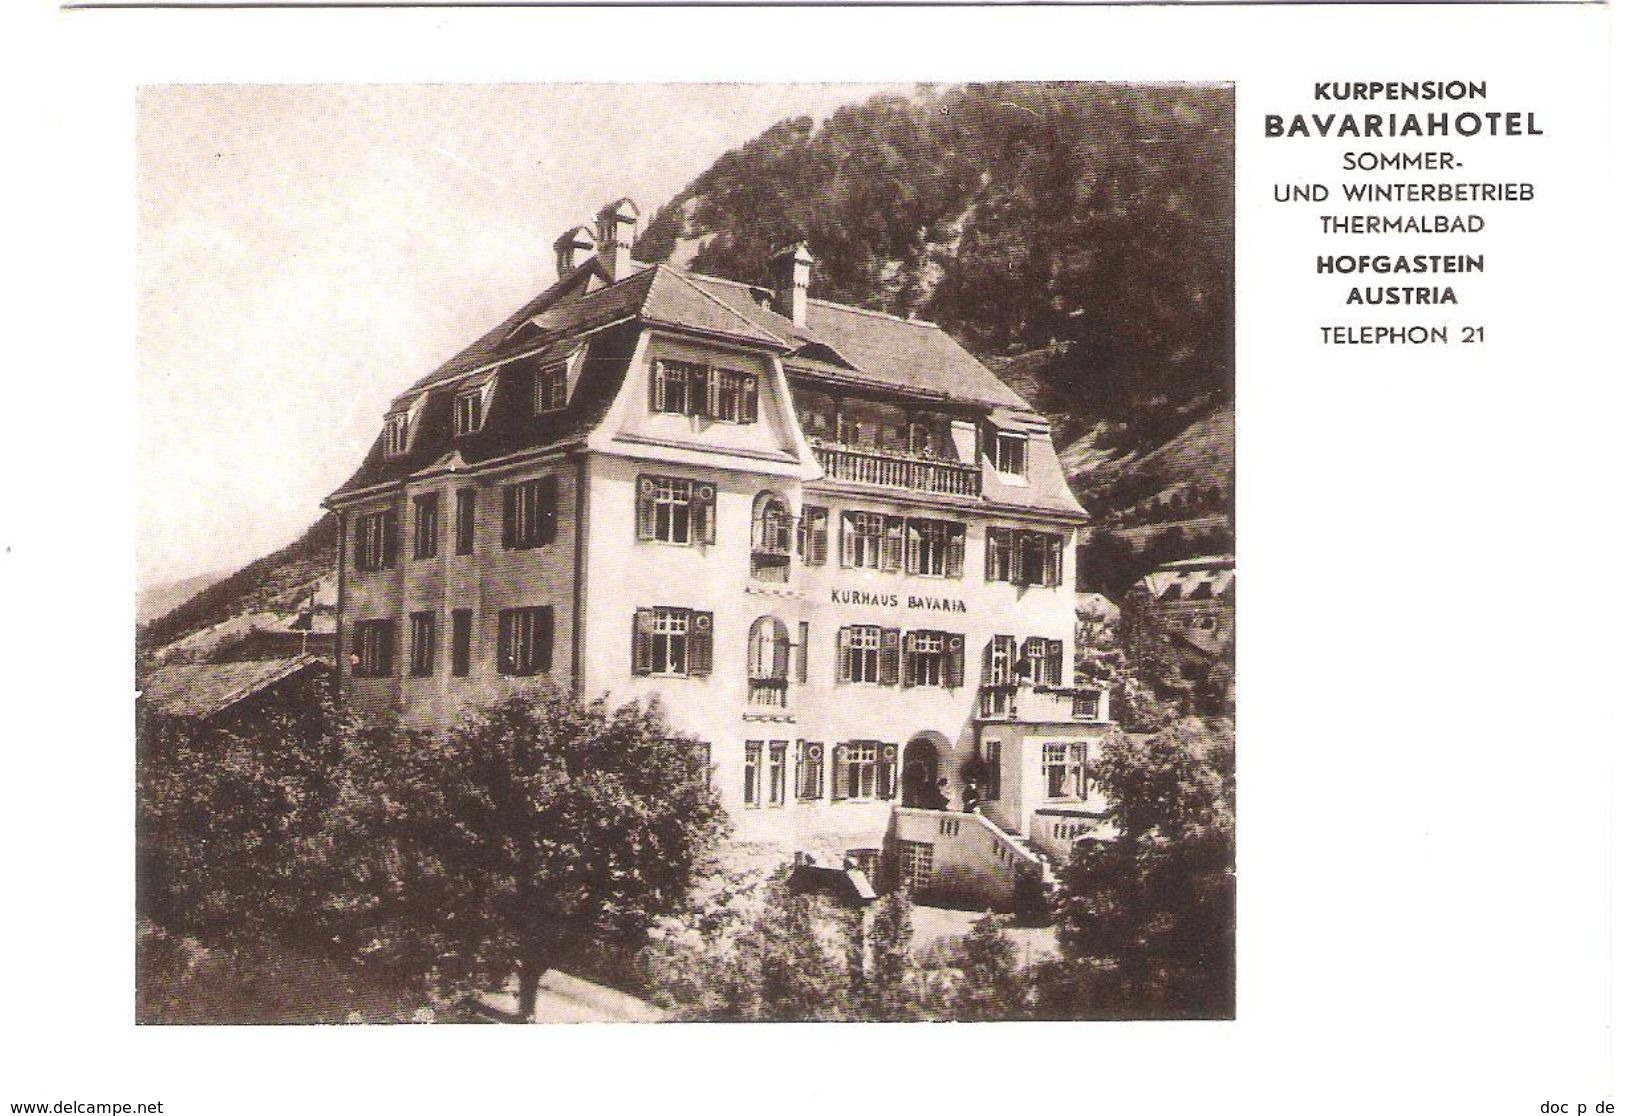 Österreich - Bad Hofgastein - Kurpension Bavariahotel - Hotel Kurhaus Bavaria - Pension - Bad Hofgastein